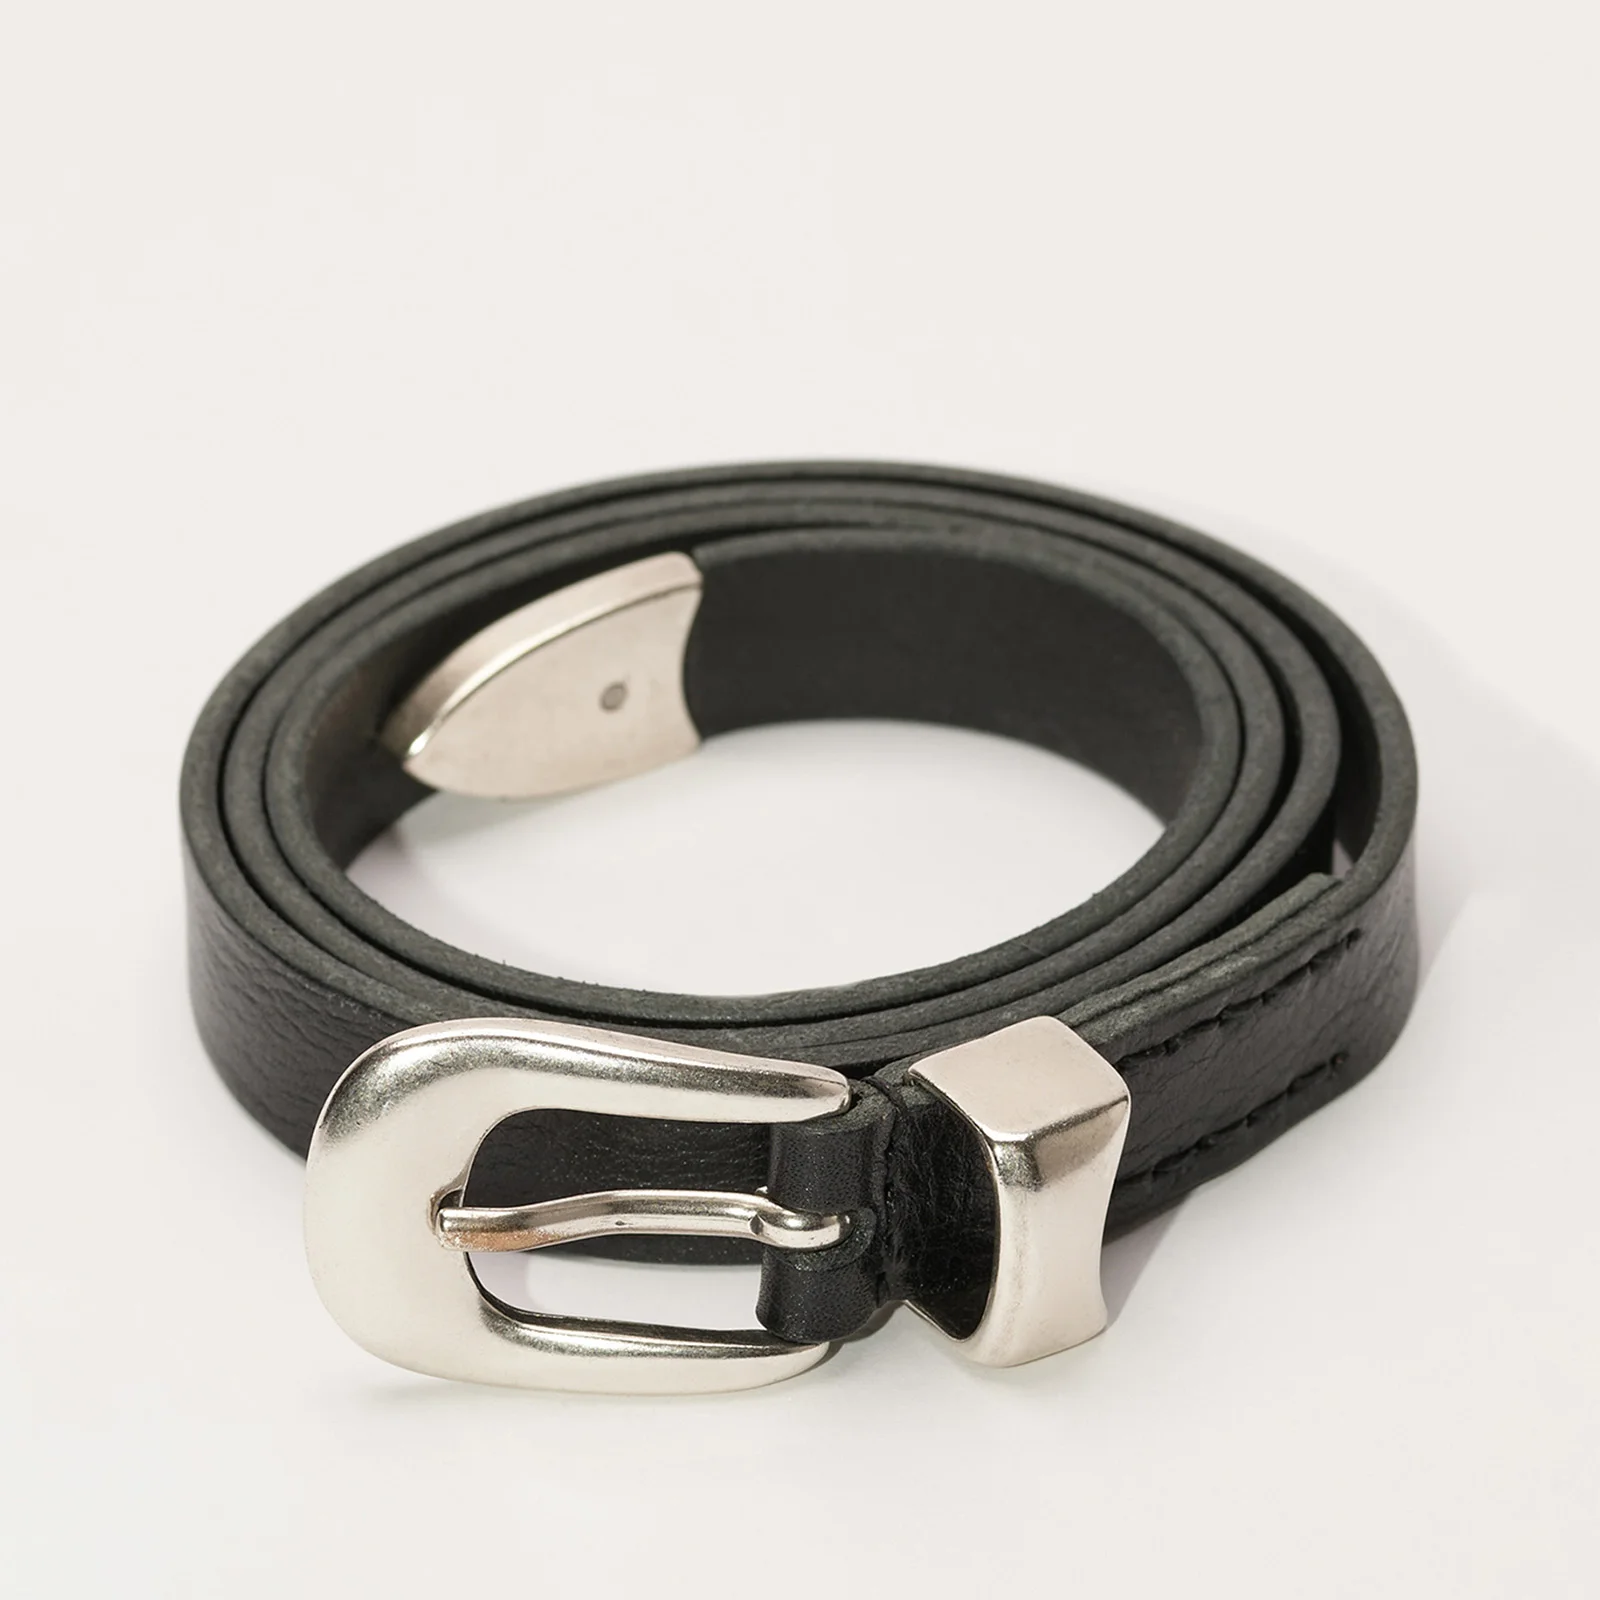 Our Legacy Men's 2cm Leather Belt - Black Image 1